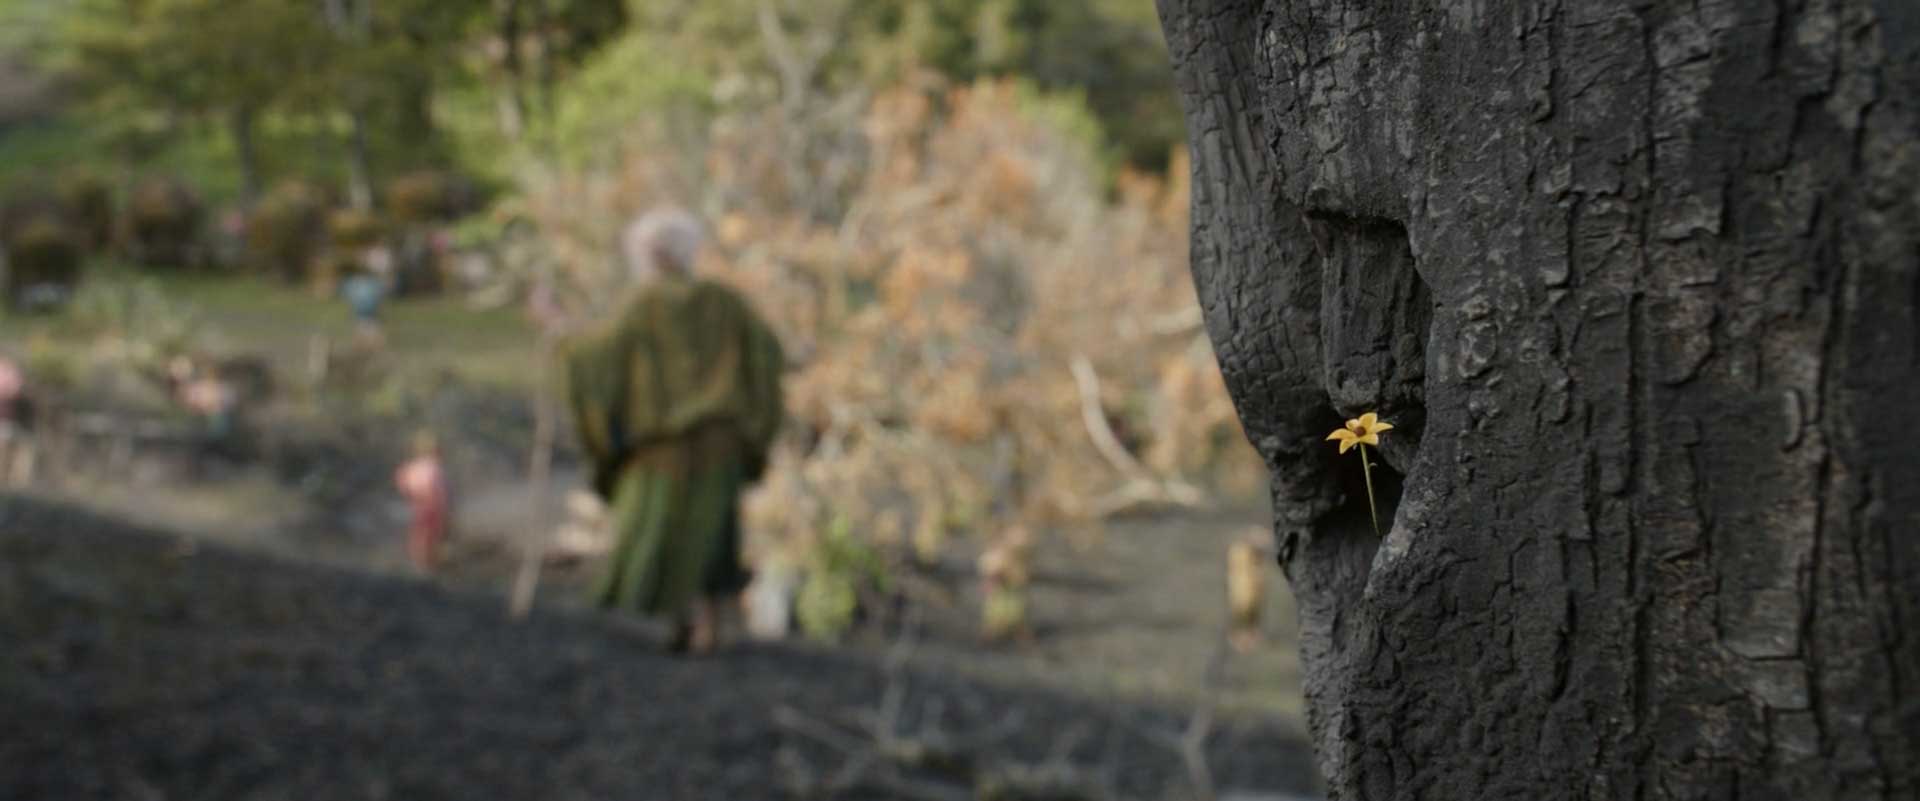 گل کوچک روی بدنه درخت در قسمت ۷ فصل ۱ سریال The Lord of the Rings (ارباب حلقه ها)